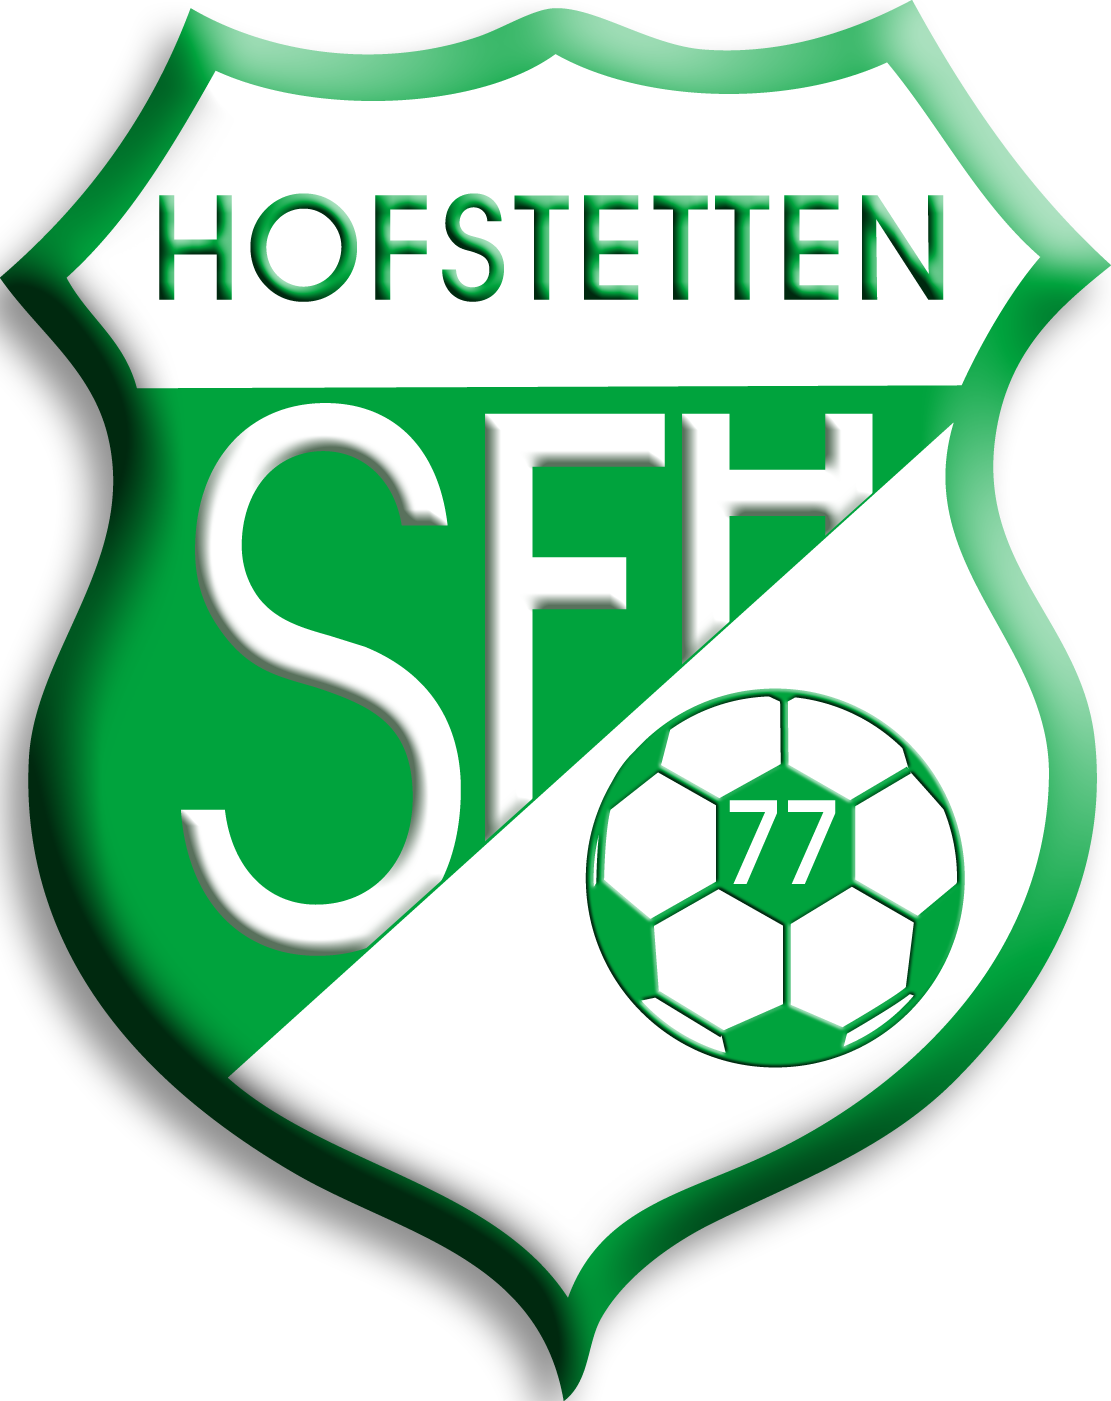 Spfrd Hofstetten-1210163926.psd